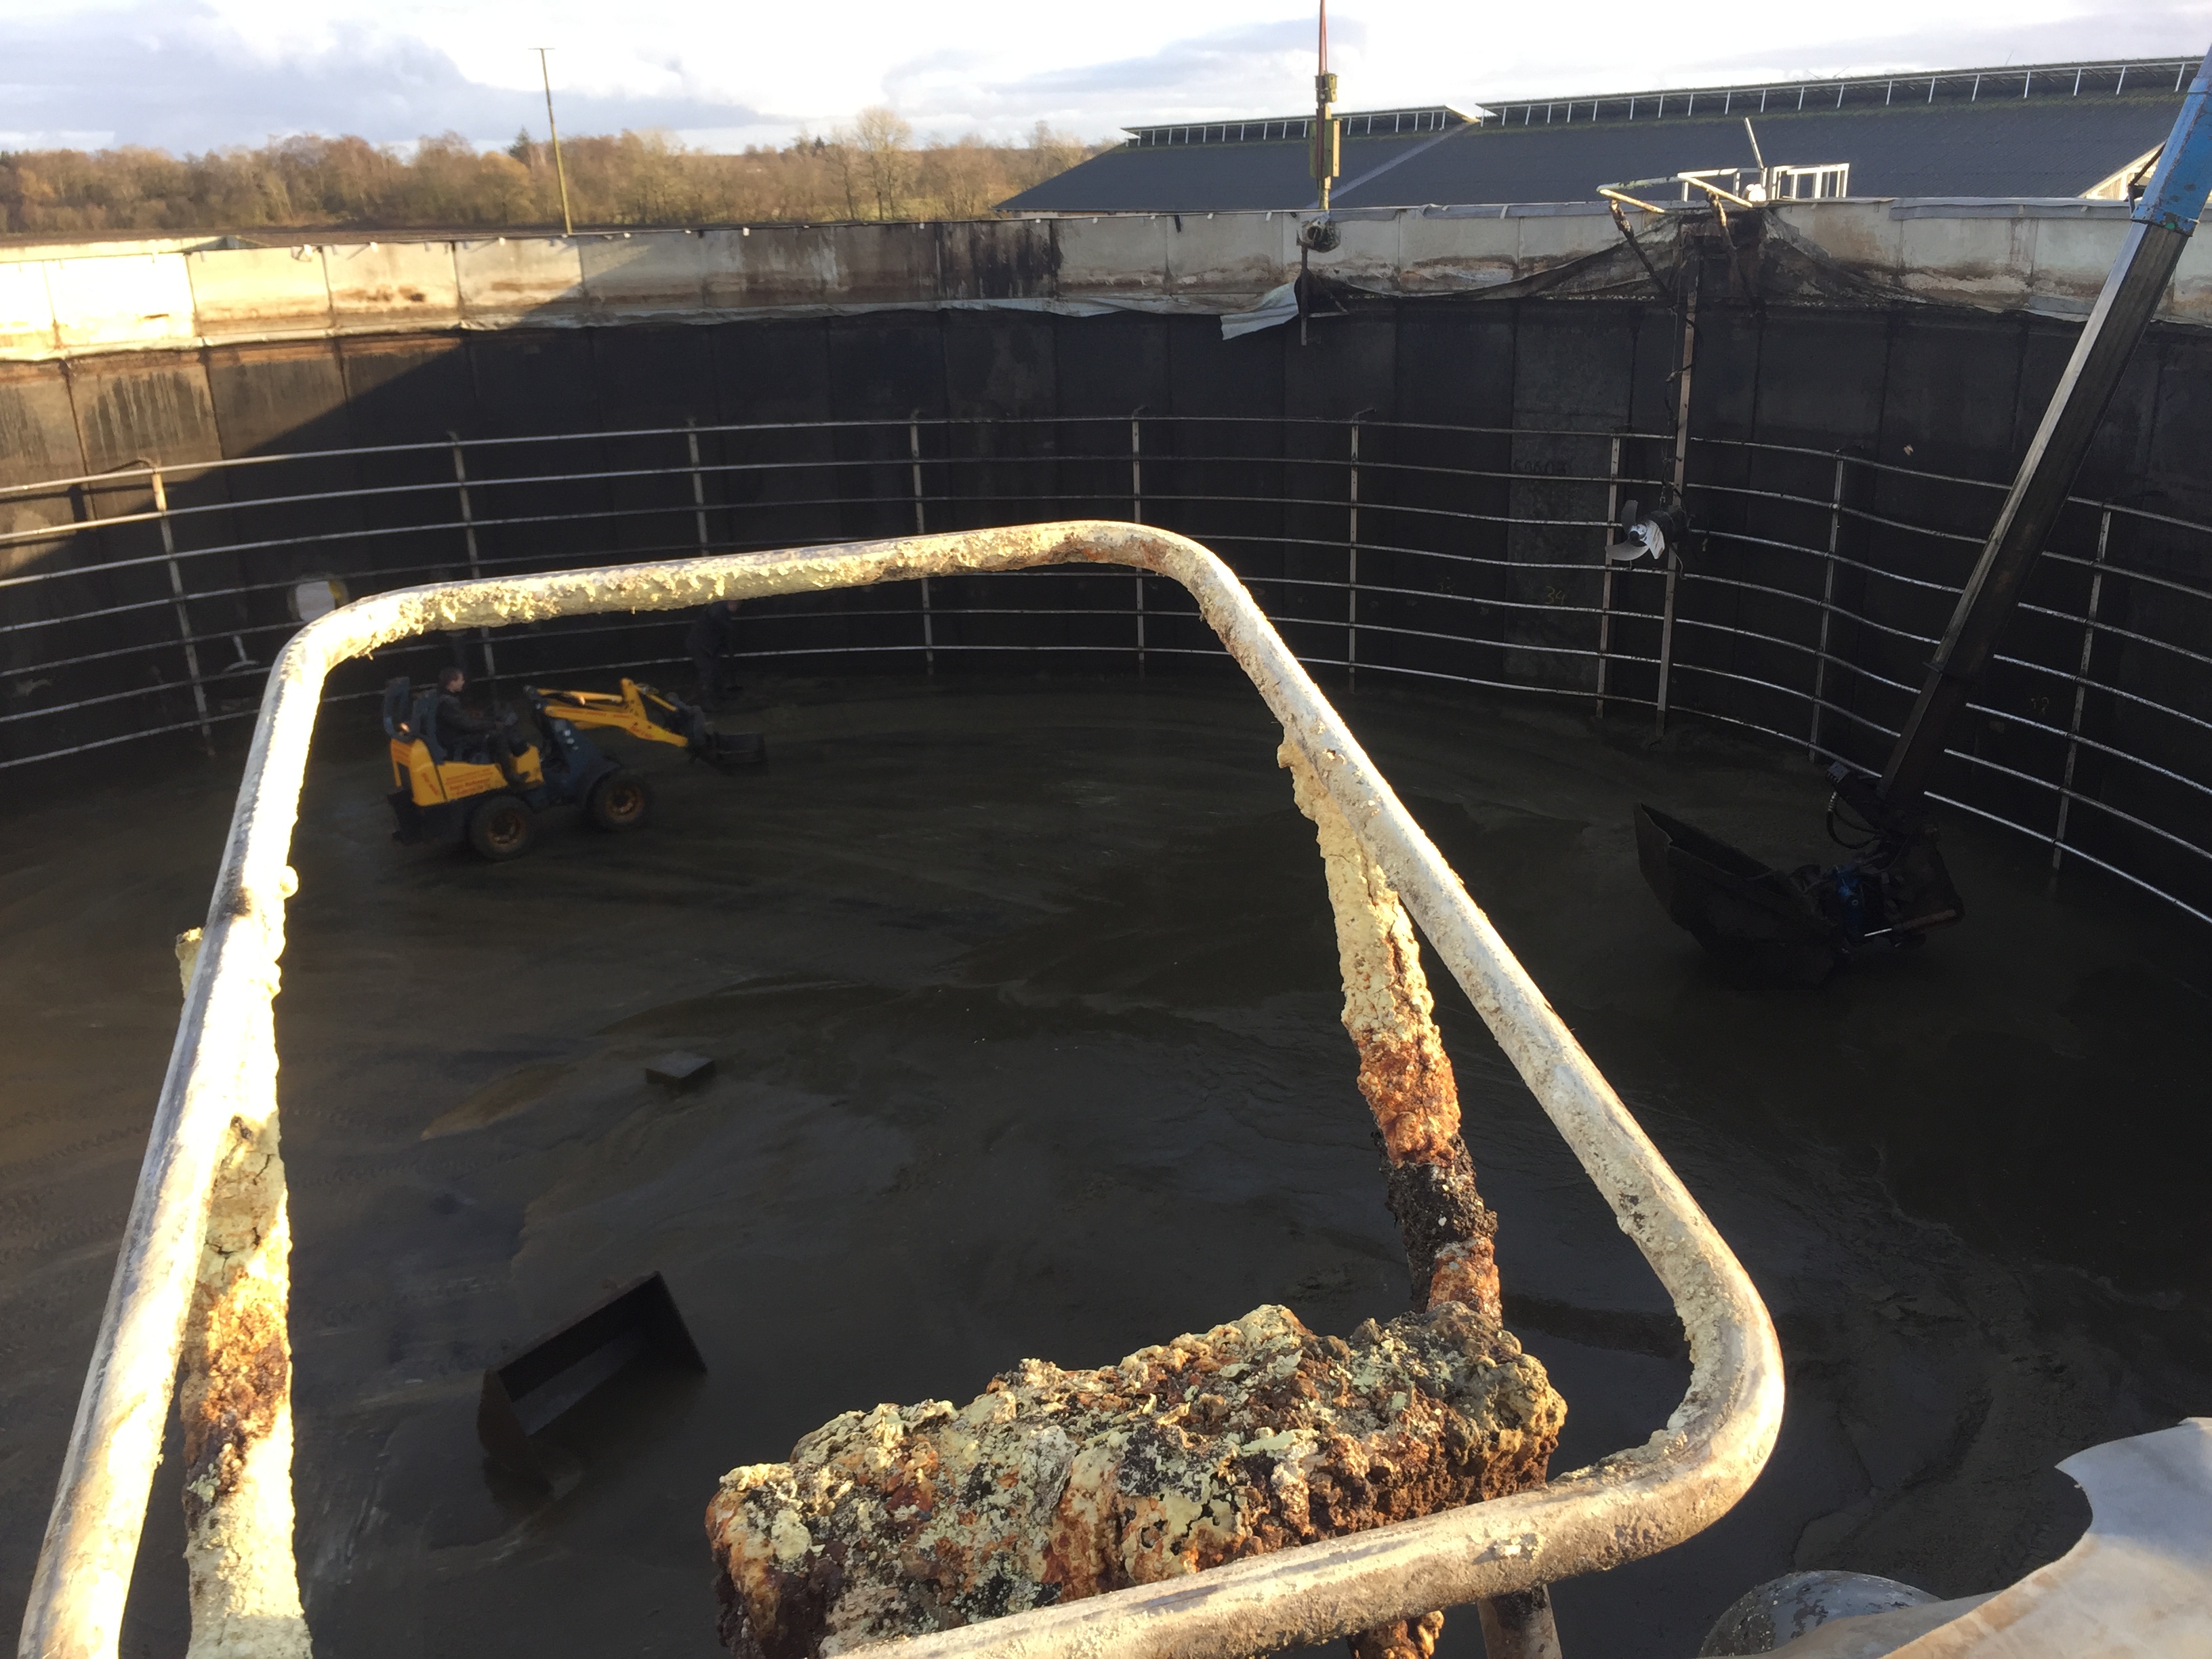 Instandsetzung einer EnviTec Biogasanlage  Wiederaufbau und Repowering mit NORTH-TEC Biogas - Fermenter Reinigung, Reparatur und Sanierung (4)